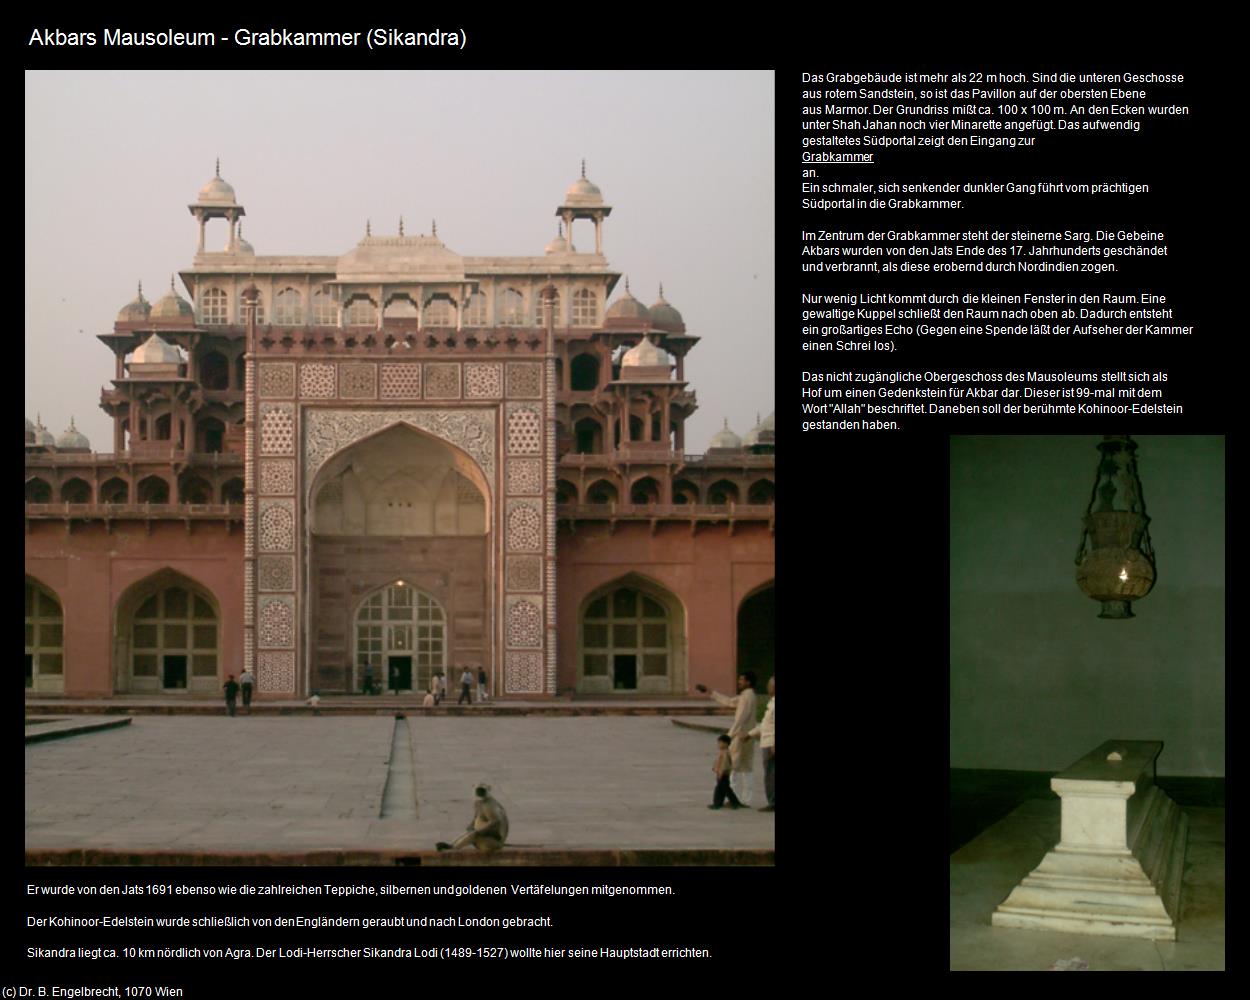 Akbars Mausoleum - Grabkammer (Sikandra) in Rajasthan - das Land der Könige(c)B.Engelbrecht